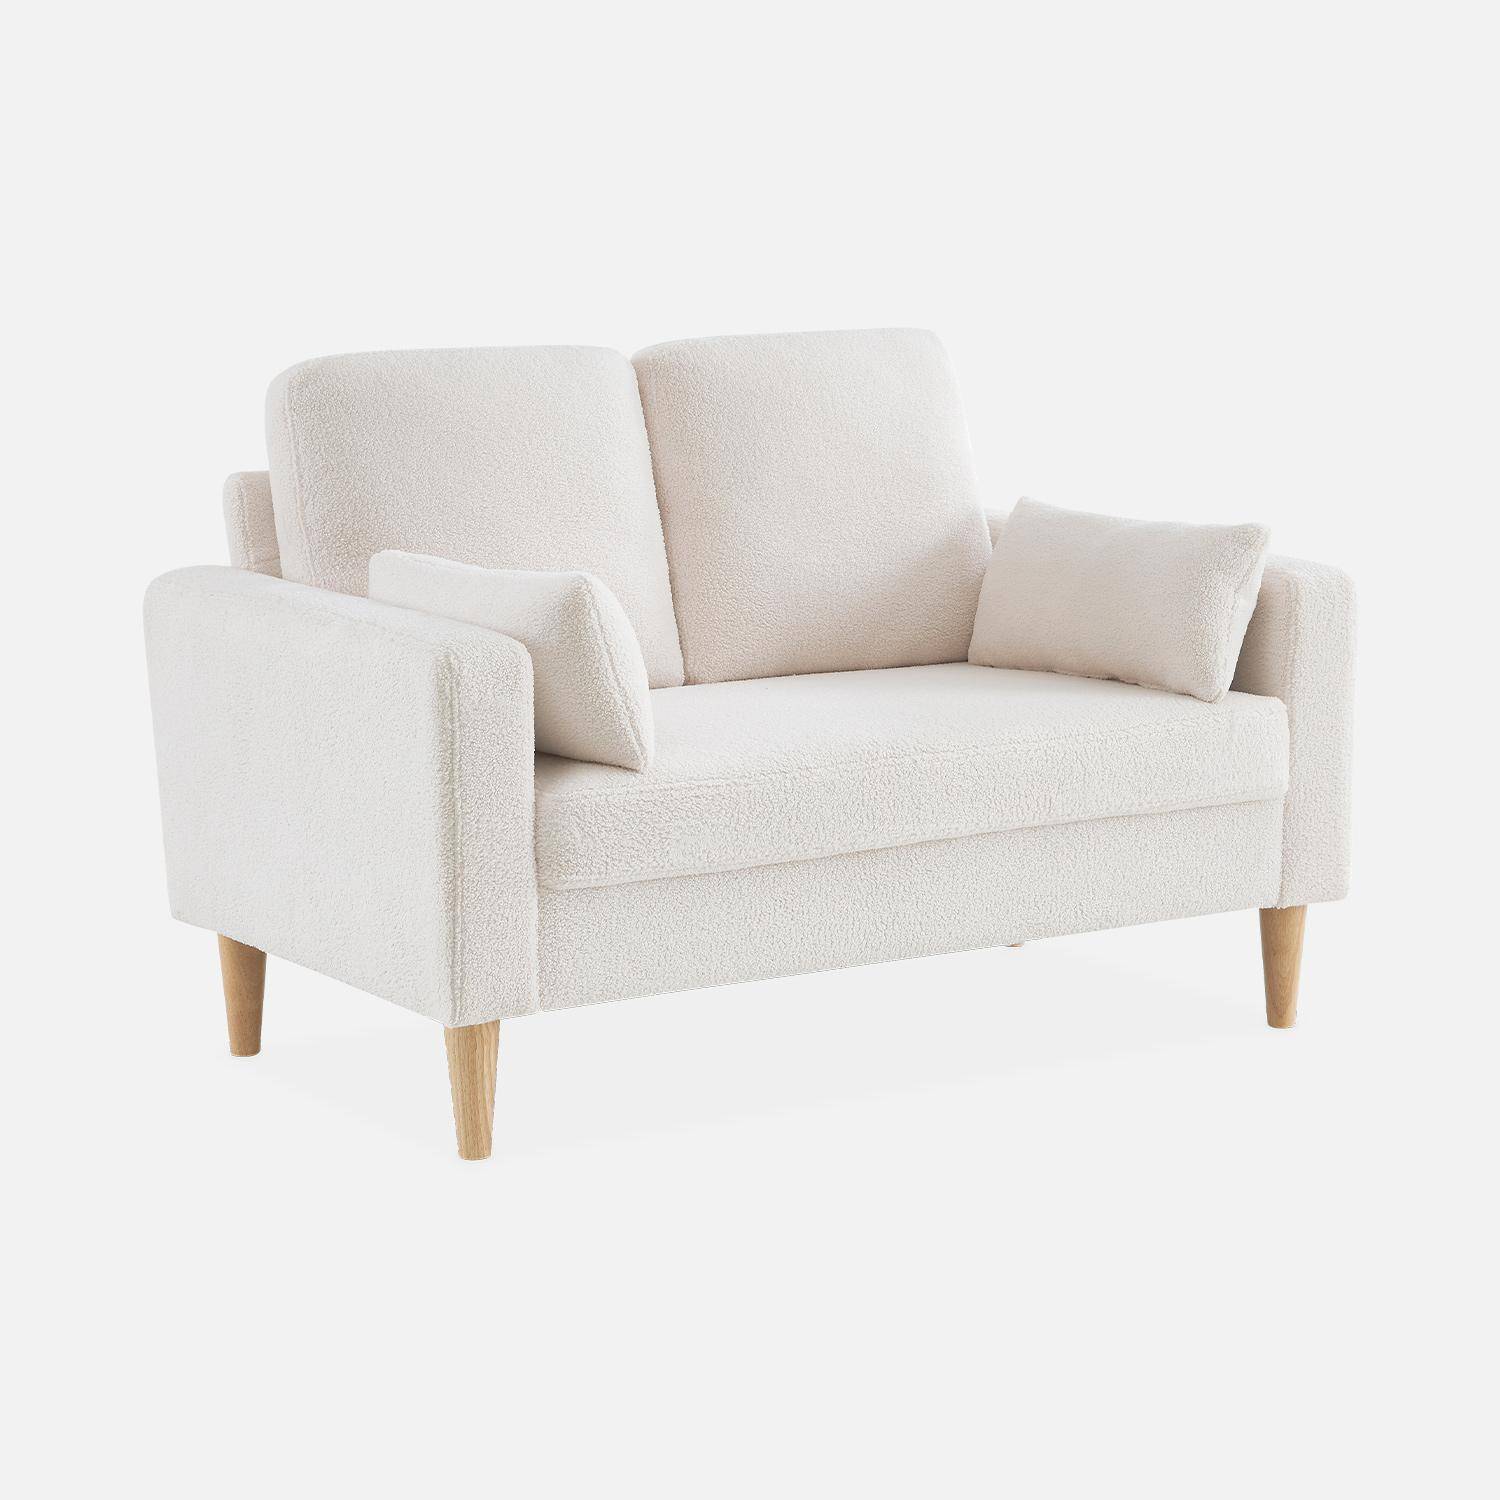 Sofá com caracóis brancos - Bjorn - sofá reto de 2 lugares com pernas de madeira, estilo escandinavo,sweeek,Photo3